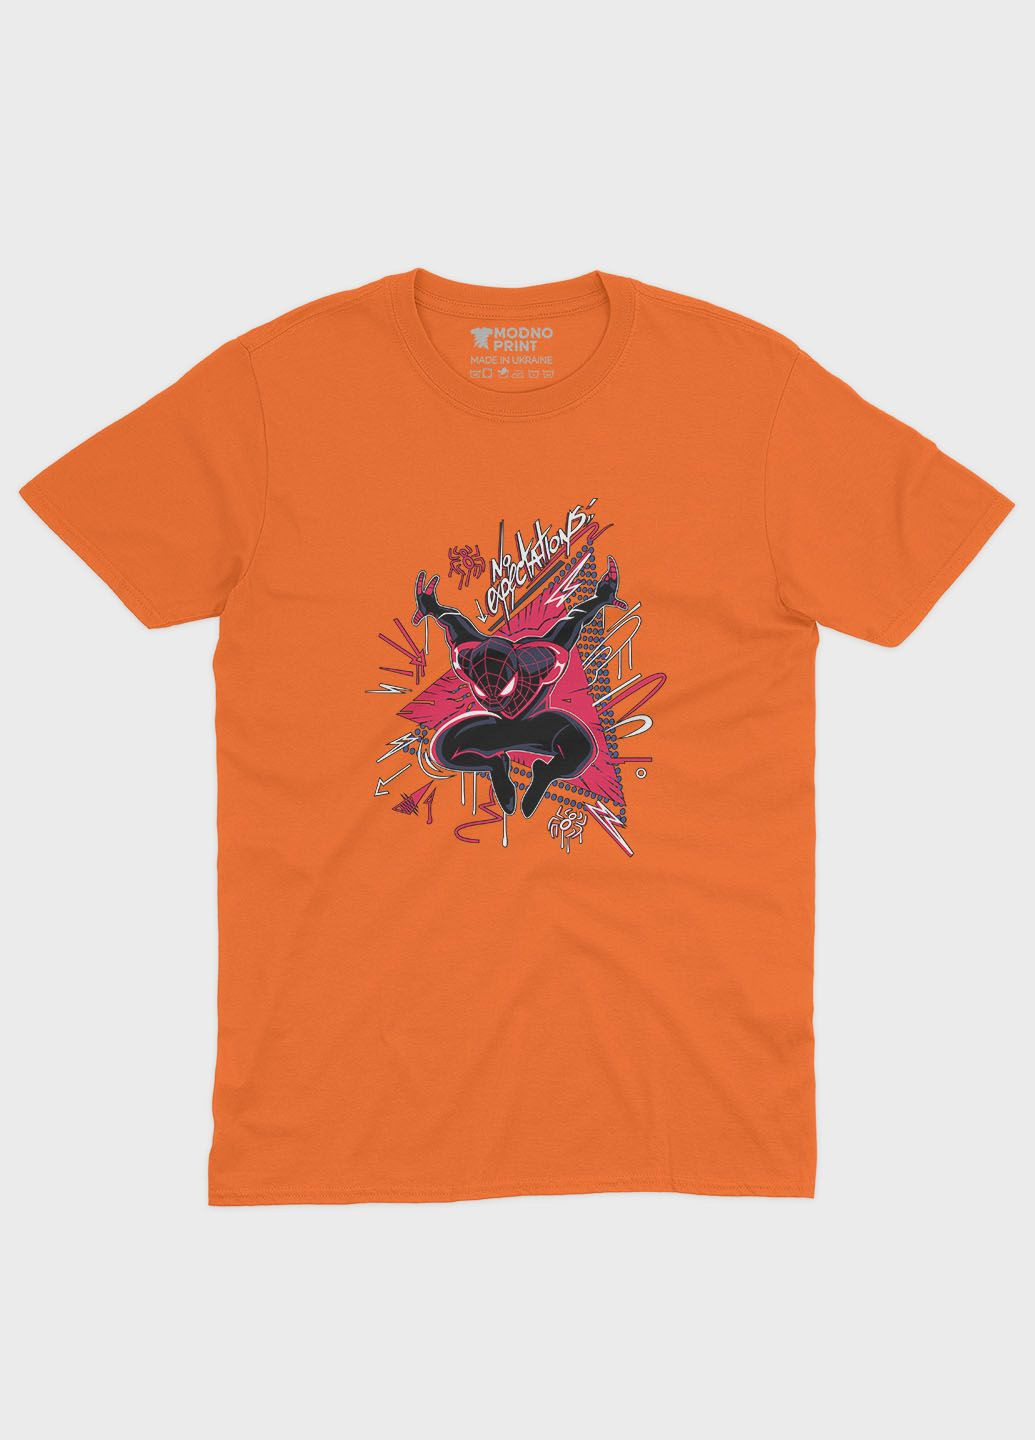 Оранжевая демисезонная футболка для девочки с принтом супергероя - человек-паук (ts001-1-ora-006-014-049-g) Modno